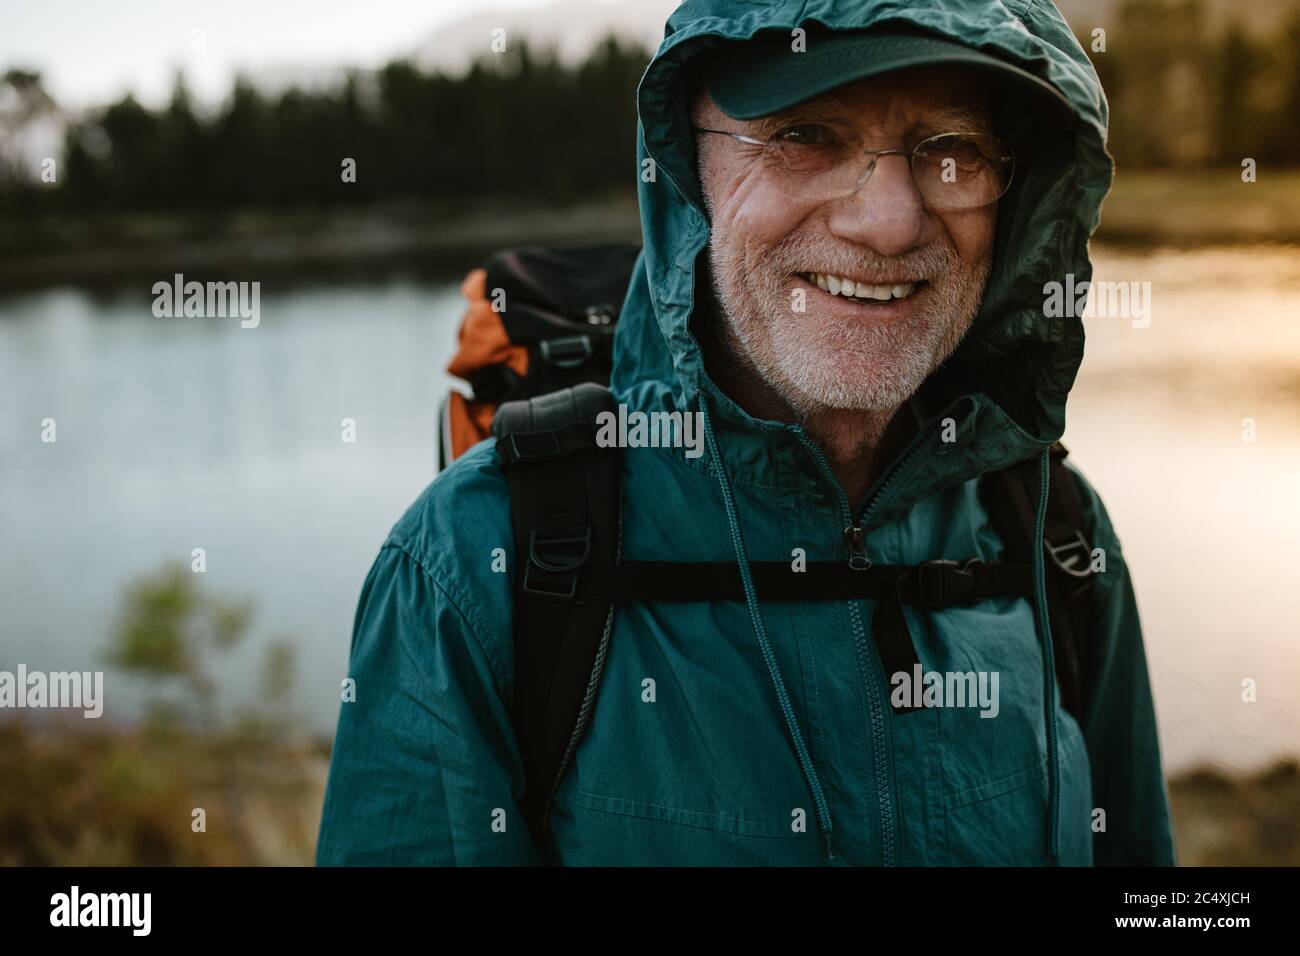 Retrato de un hombre mayor que lleva una mochila mirando la cámara y sonriendo. Un hombre de edad en un viaje de senderismo con el río en el fondo. Foto de stock